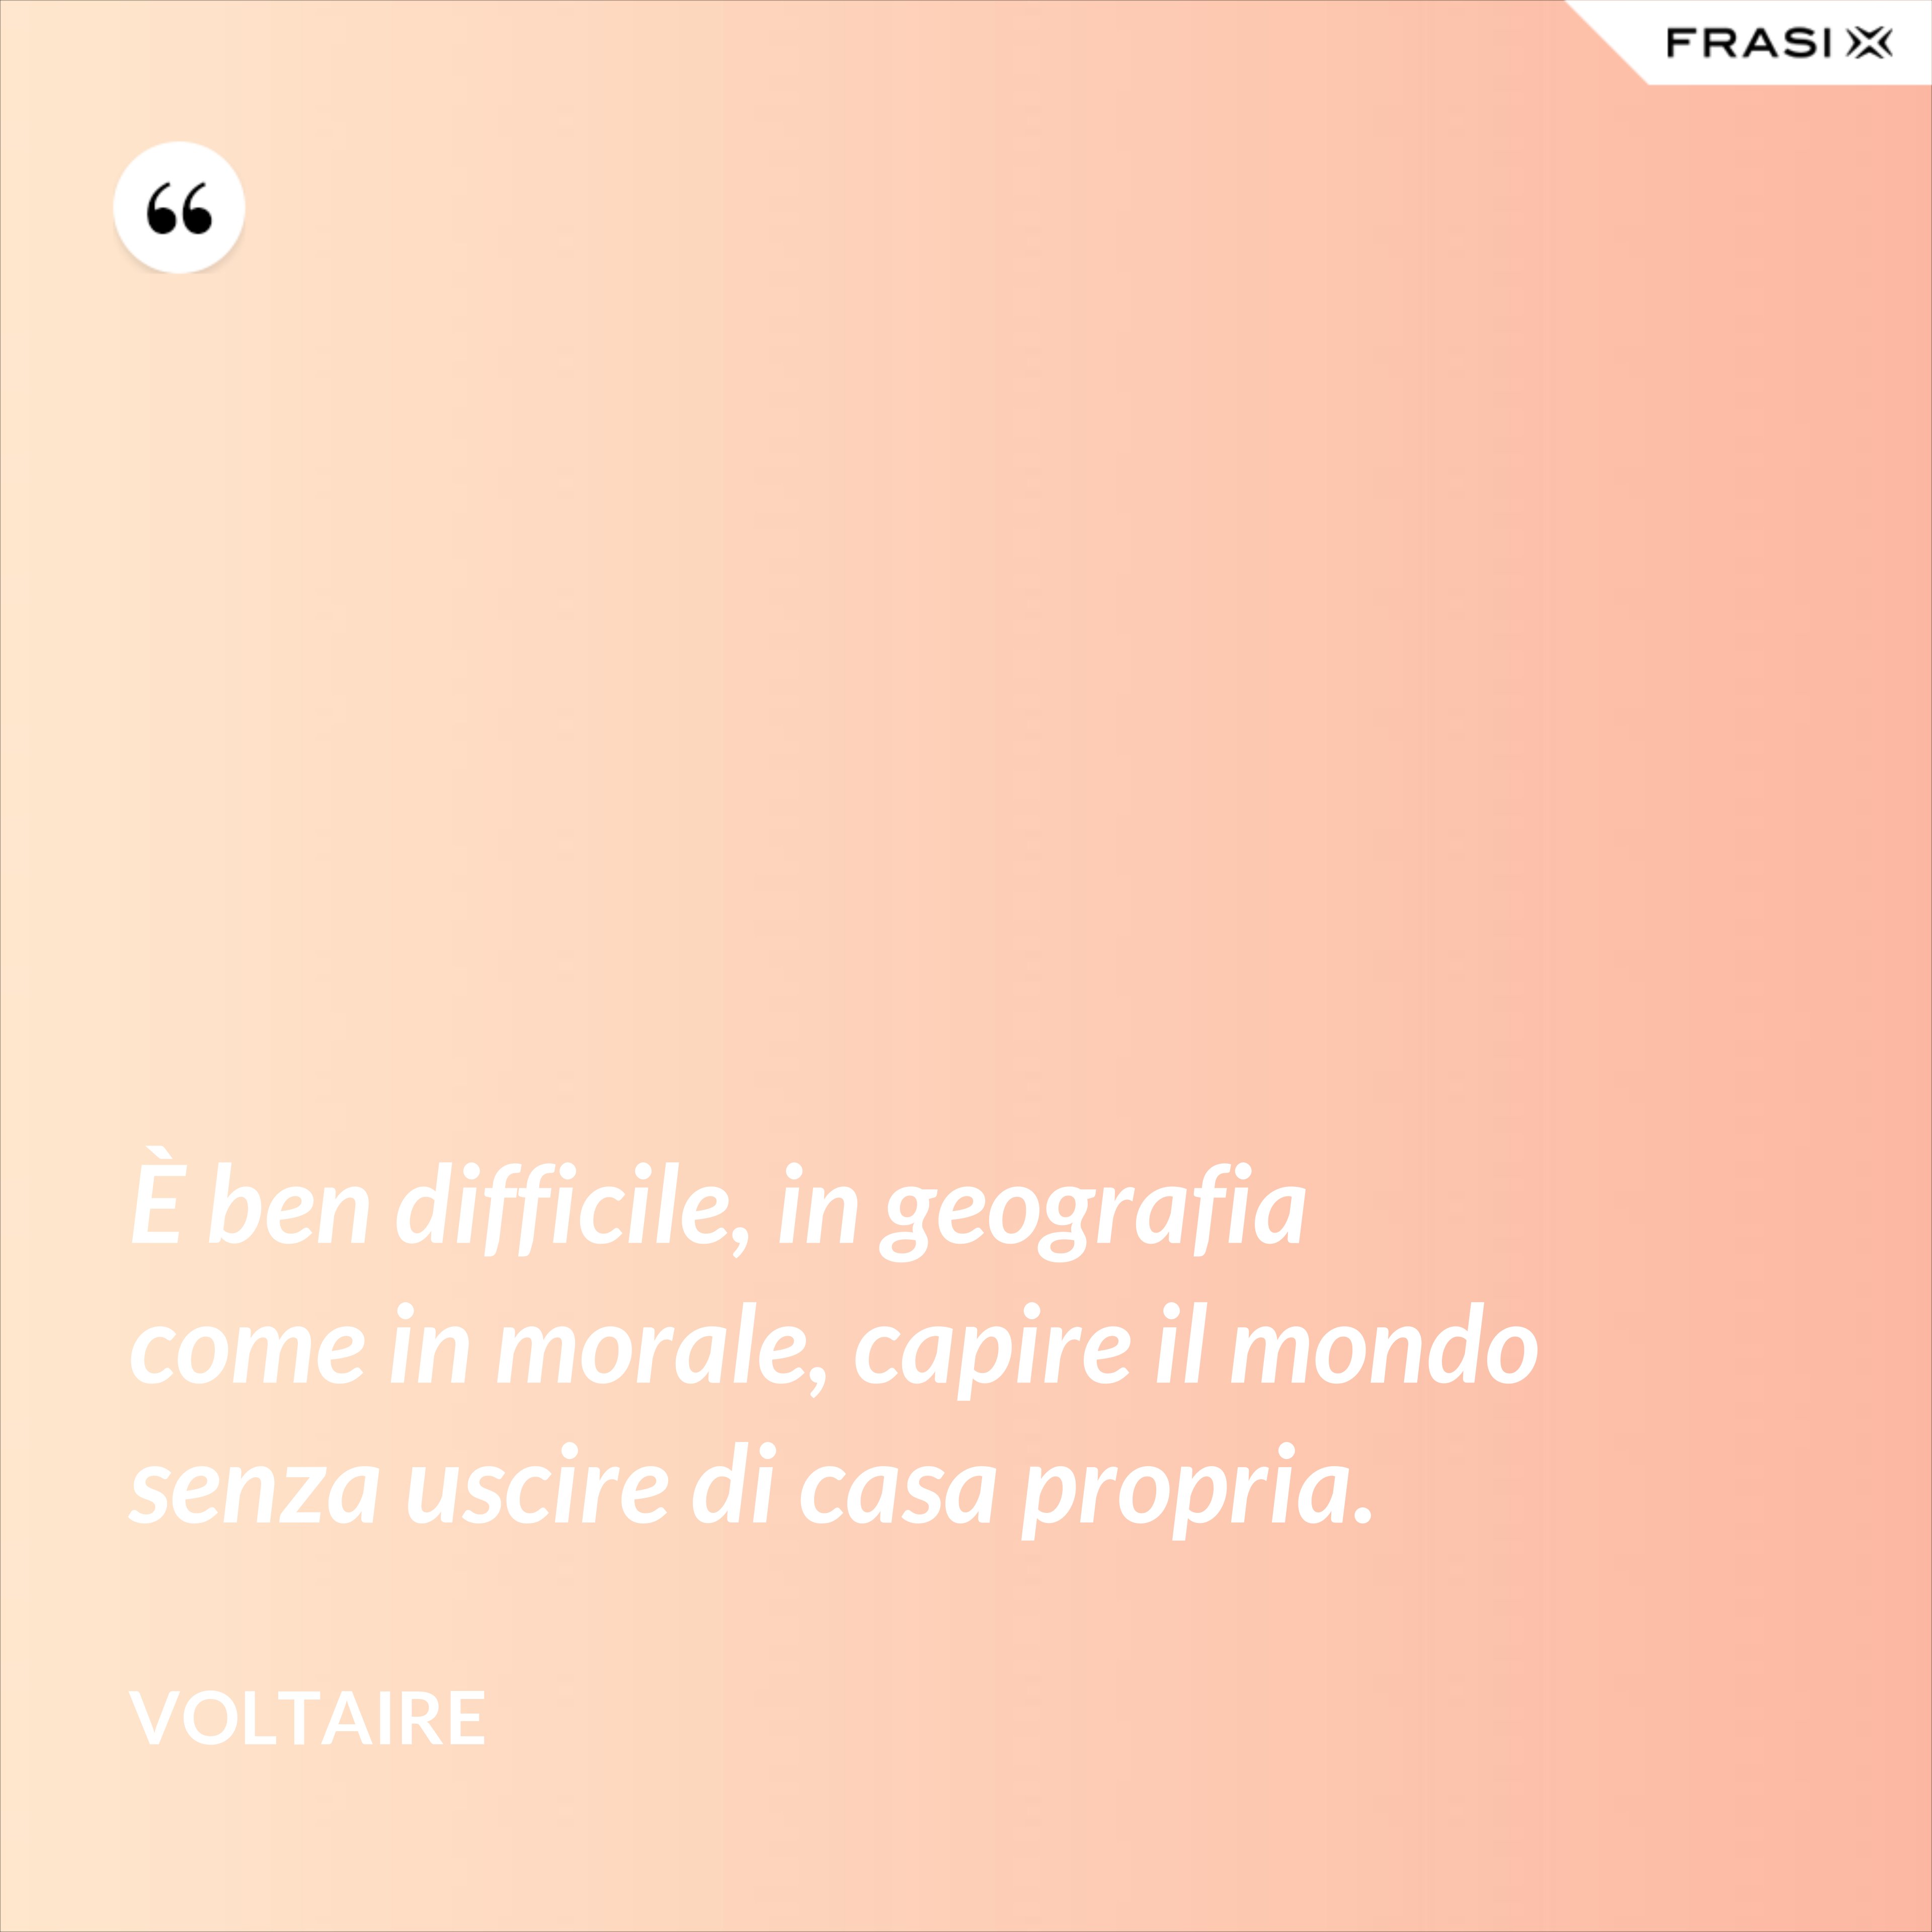 È ben difficile, in geografia come in morale, capire il mondo senza uscire di casa propria. - Voltaire